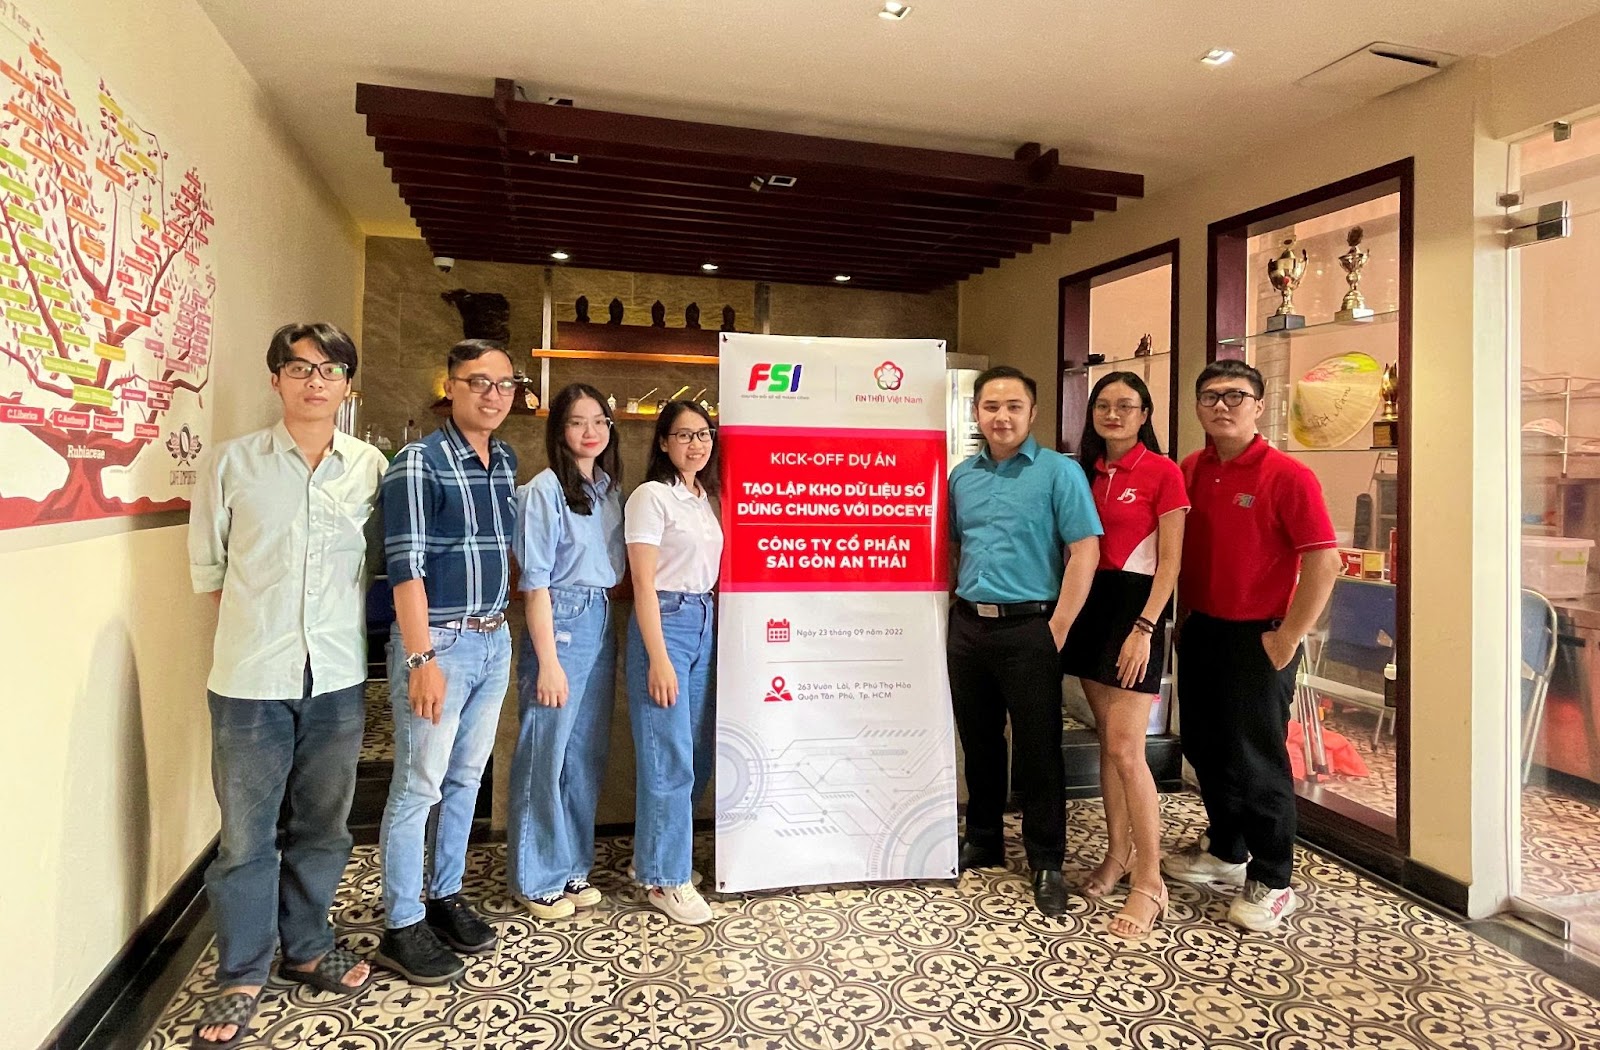 FSI khởi động dự án “tạo lập kho dữ liệu số dùng chung với DocEye” cho Công ty Sài Gòn An Thái